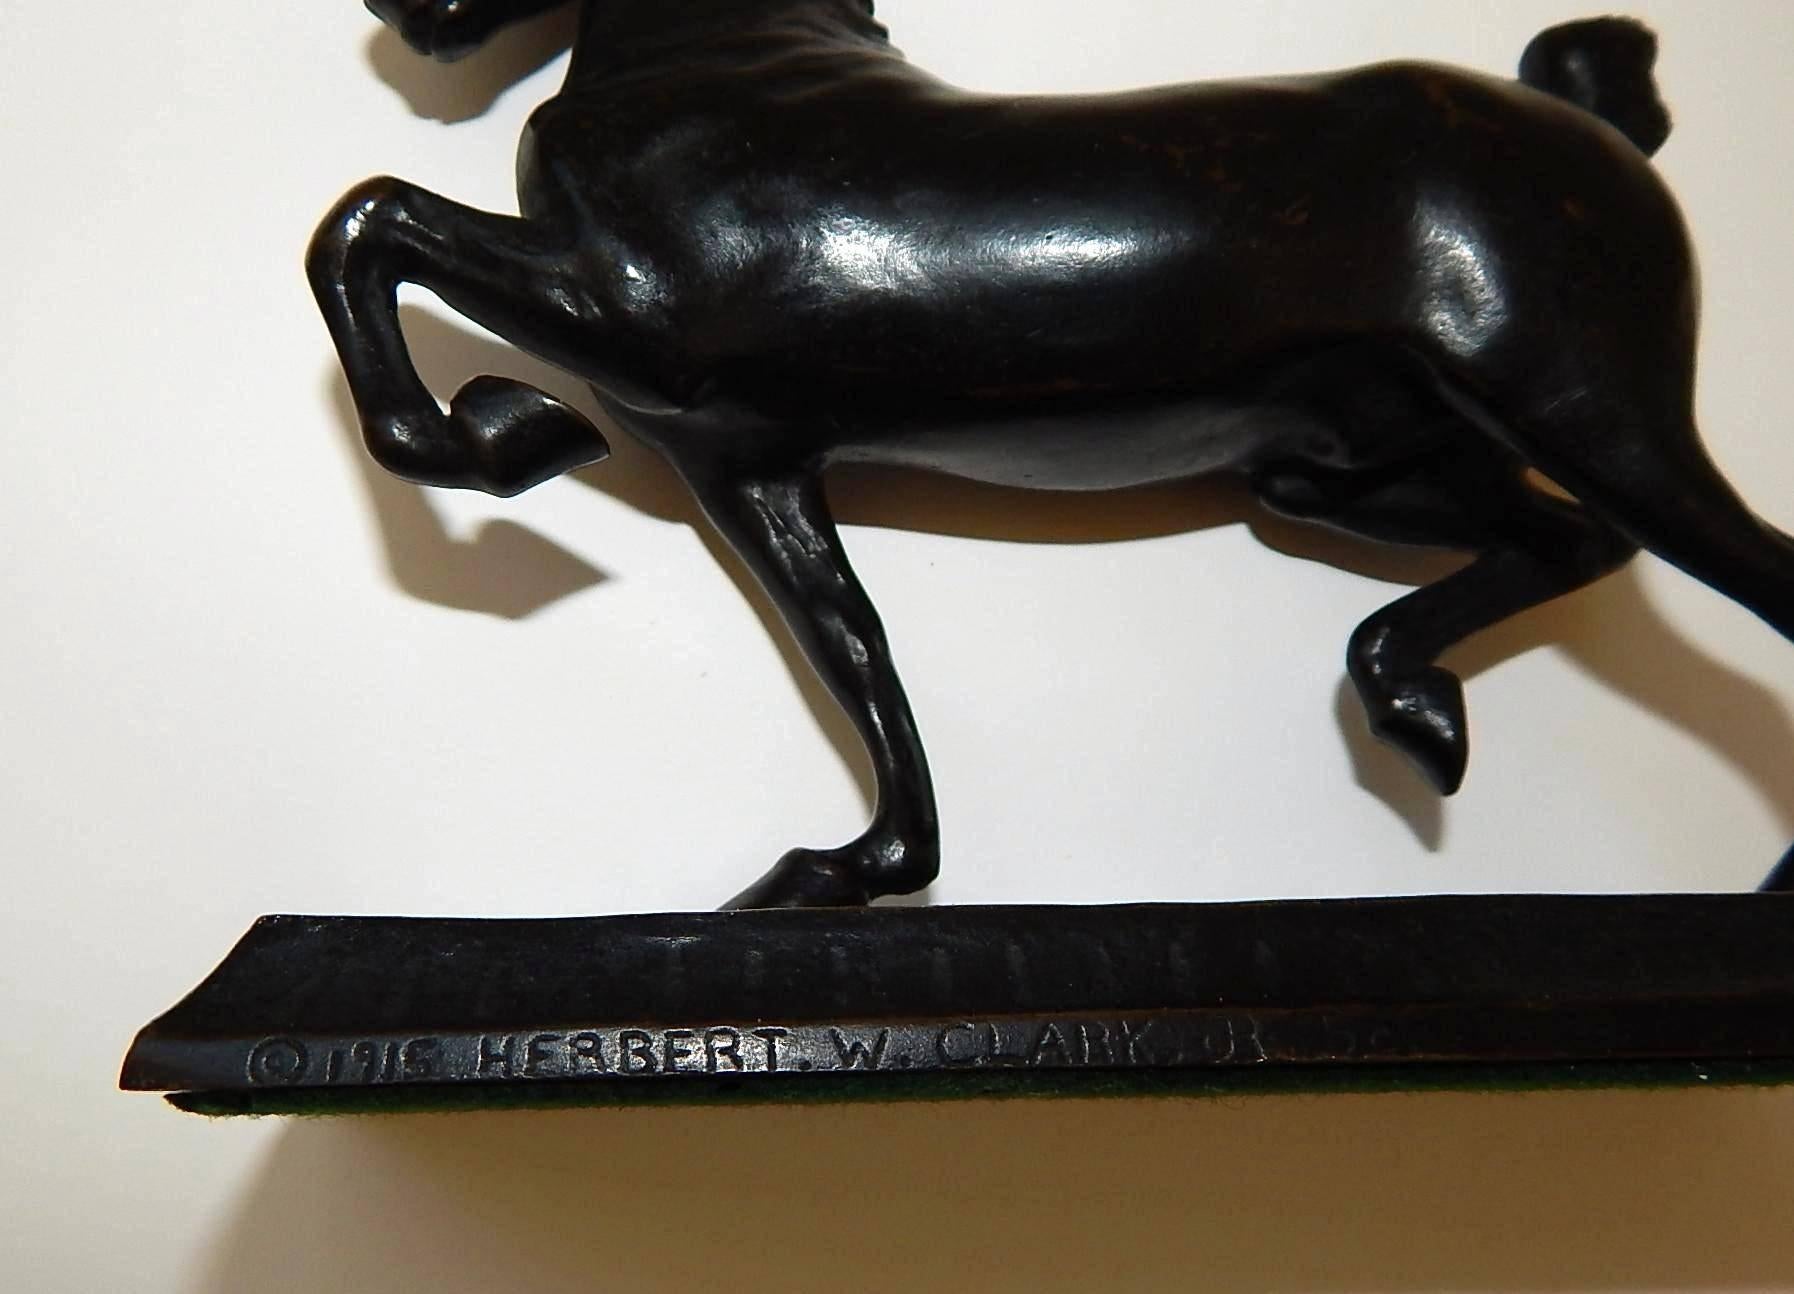 American Herbert W. Clark Jr Bronze Horse Sculpture